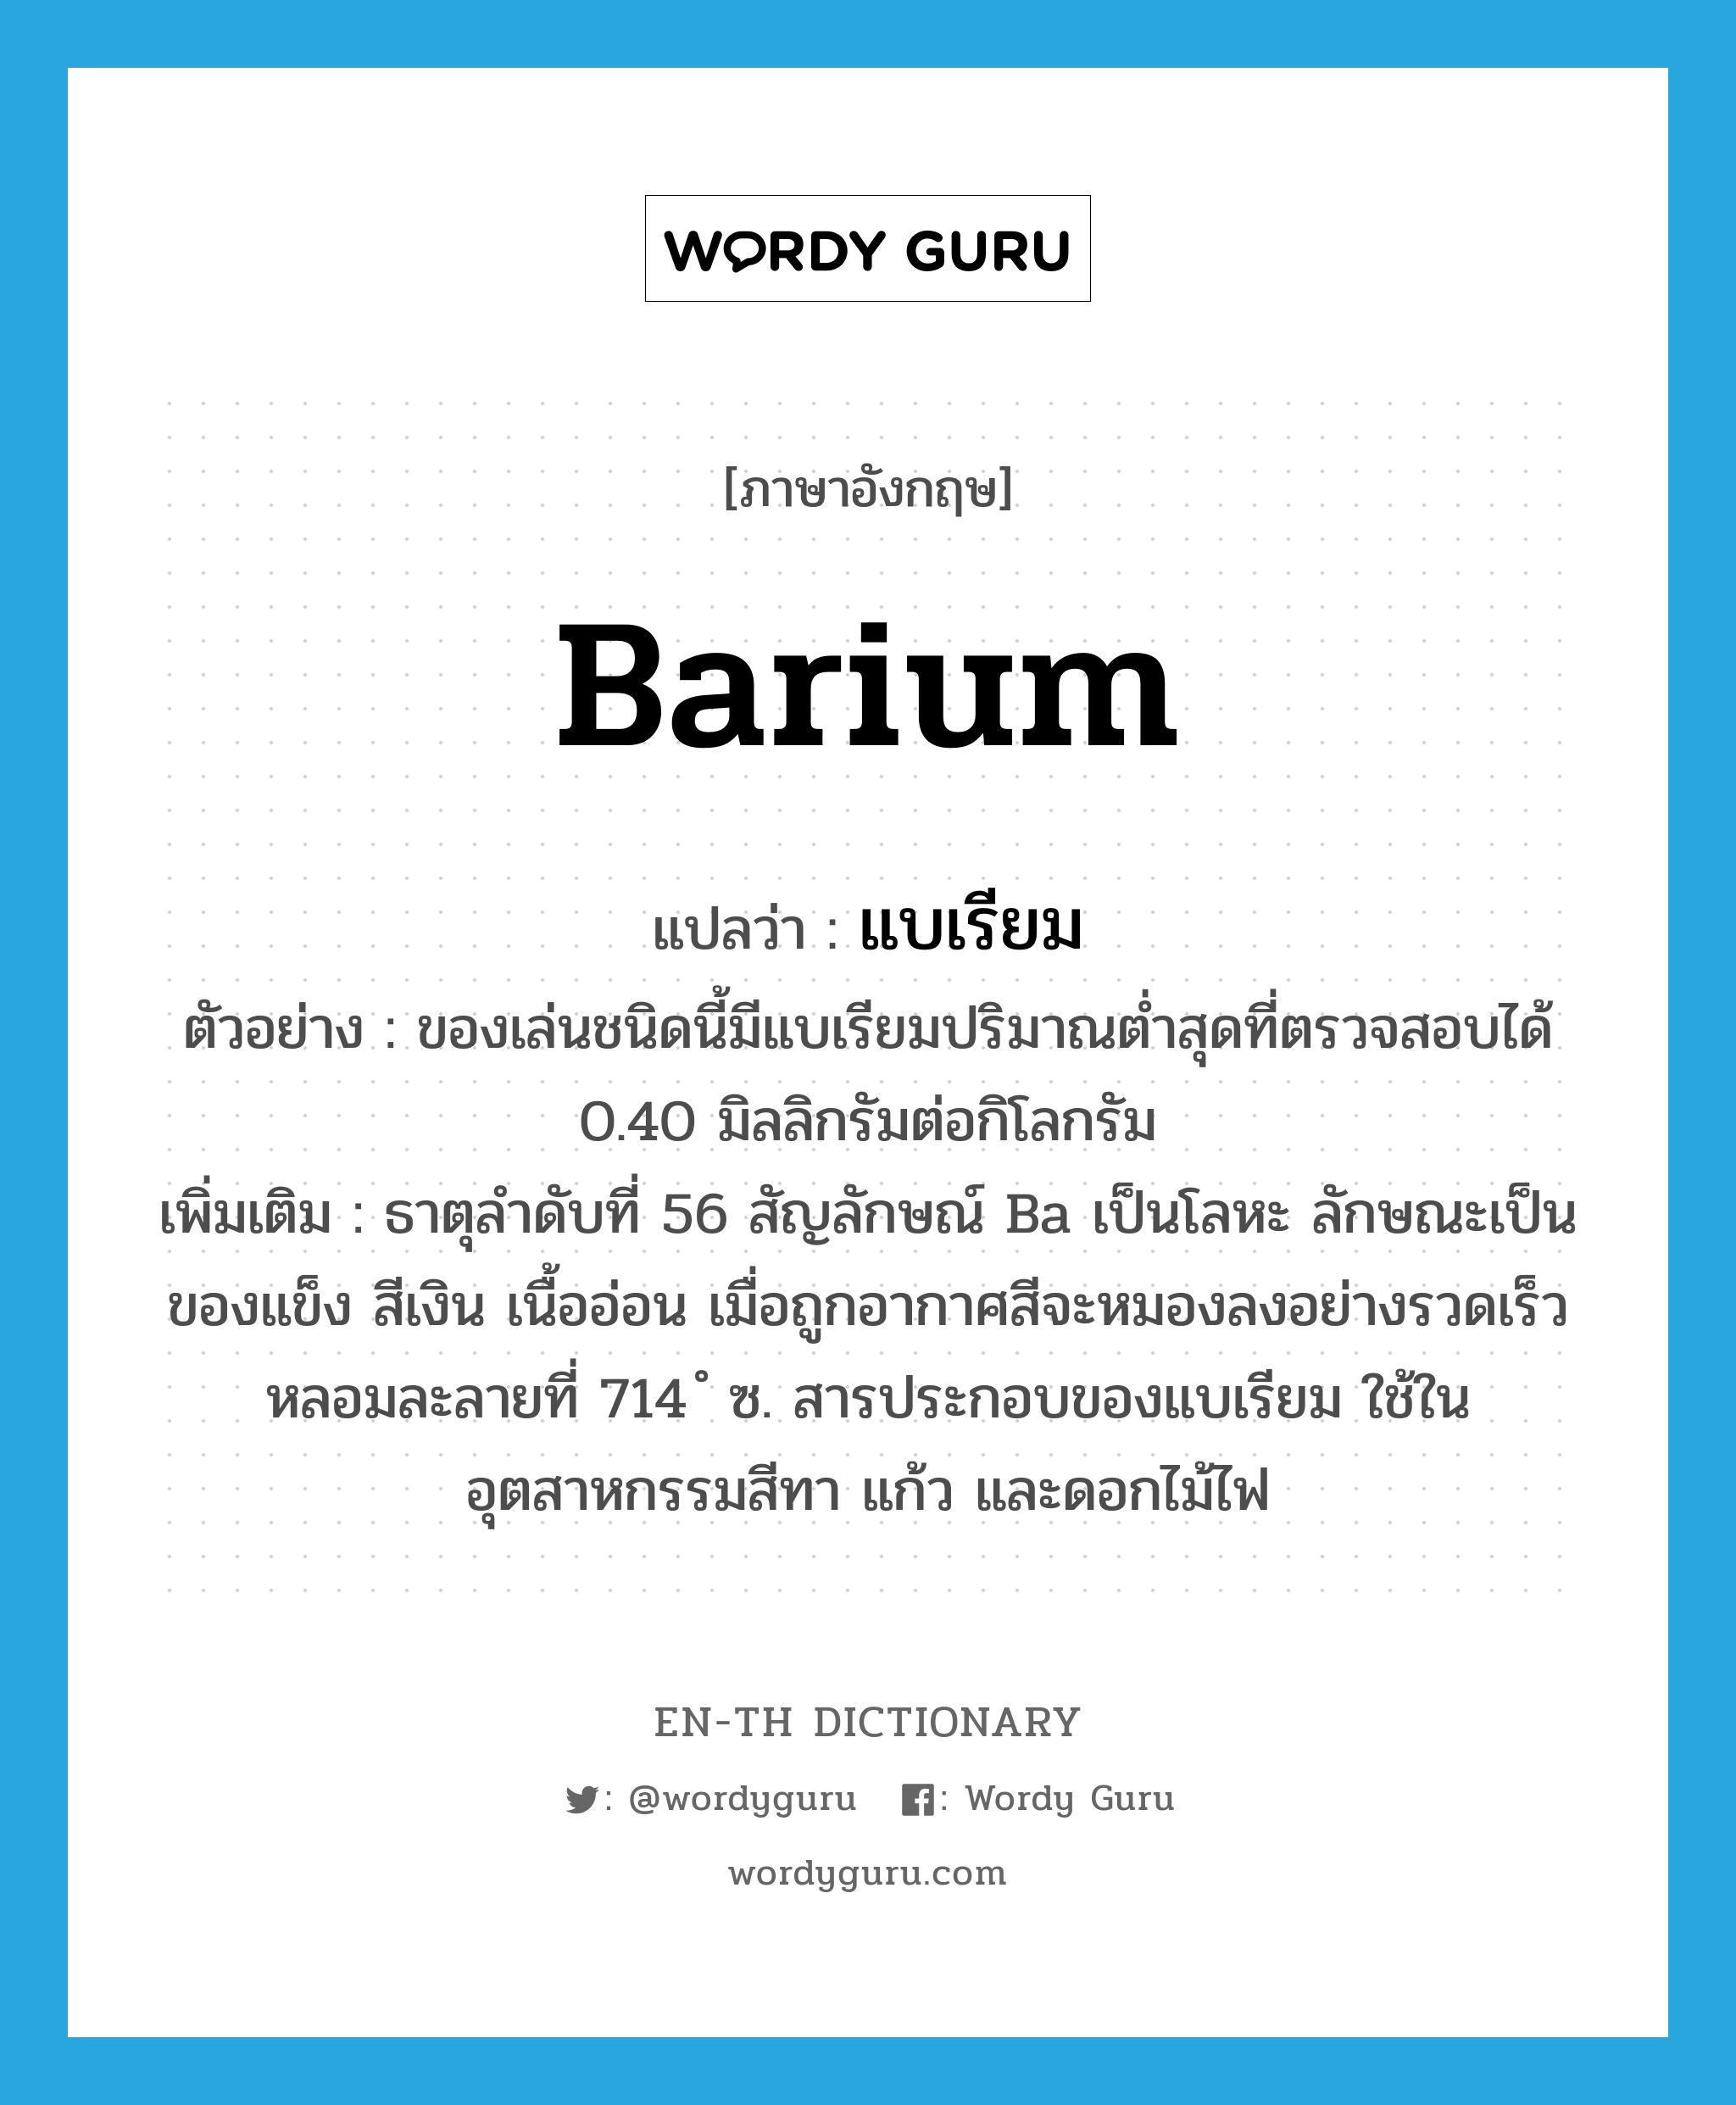 barium แปลว่า?, คำศัพท์ภาษาอังกฤษ barium แปลว่า แบเรียม ประเภท N ตัวอย่าง ของเล่นชนิดนี้มีแบเรียมปริมาณต่ำสุดที่ตรวจสอบได้ 0.40 มิลลิกรัมต่อกิโลกรัม เพิ่มเติม ธาตุลำดับที่ 56 สัญลักษณ์ Ba เป็นโลหะ ลักษณะเป็นของแข็ง สีเงิน เนื้ออ่อน เมื่อถูกอากาศสีจะหมองลงอย่างรวดเร็ว หลอมละลายที่ 714 ํ ซ. สารประกอบของแบเรียม ใช้ในอุตสาหกรรมสีทา แก้ว และดอกไม้ไฟ หมวด N